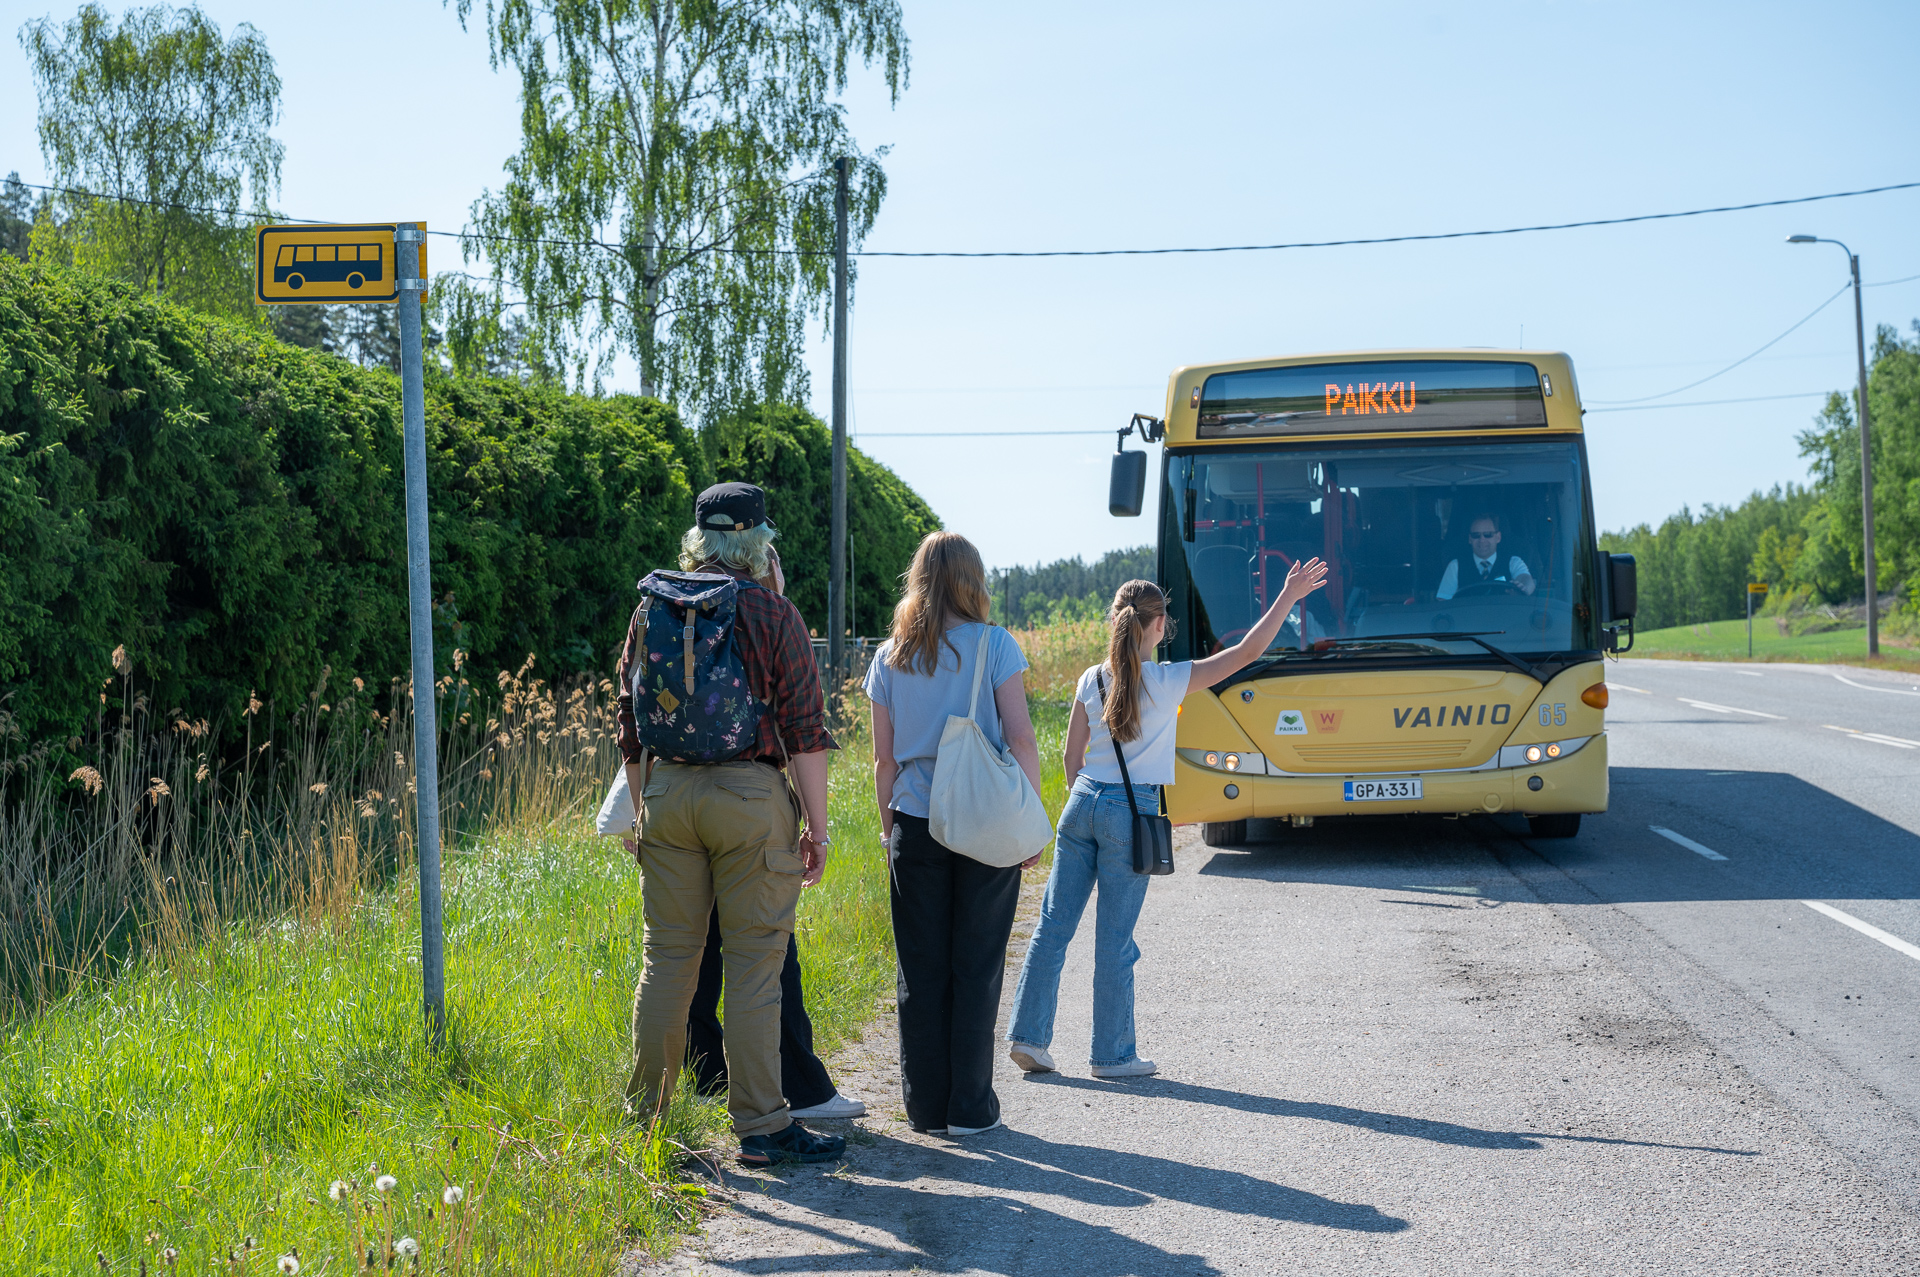 Kesäisen maantien varressa bussipysäkki. Pysäkillä seisoo neljä henkilöä, joista ensimmäinen viittaa keltaista bussia pysähtymään. Bussin keulassa lukee "PAIKKU".